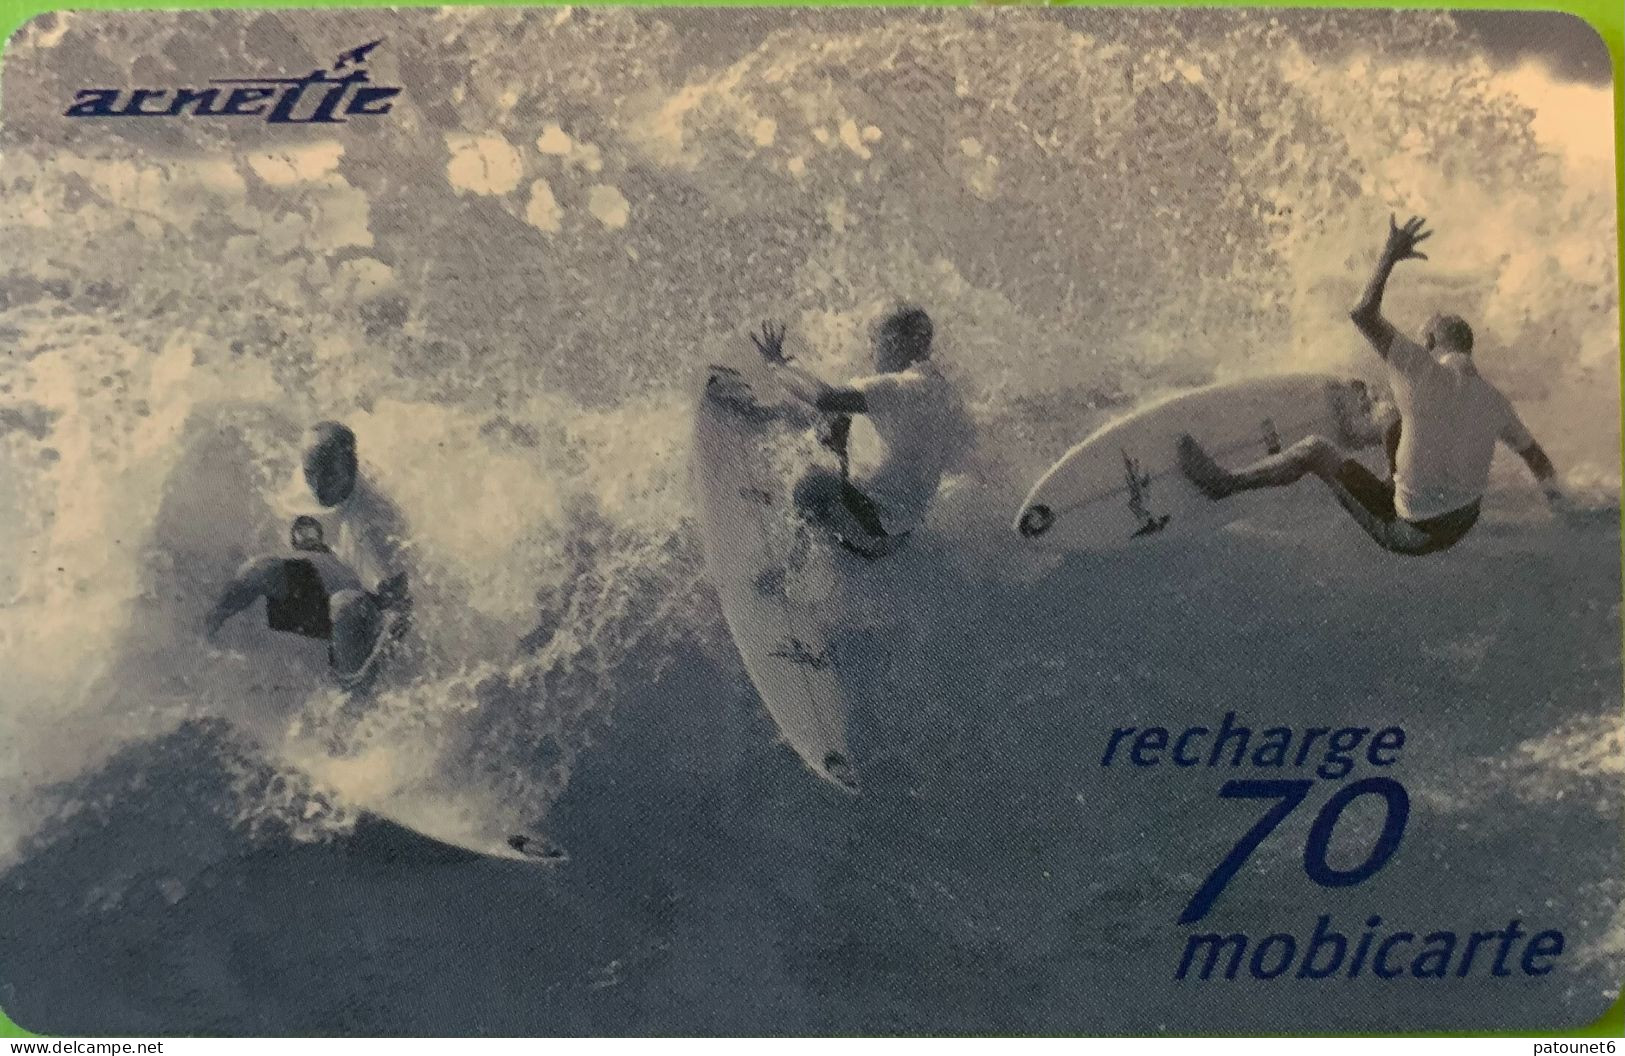 MBC 53  -  ARNETTE 6  -  Surf Bleu  -   70 Unités - - Cellphone Cards (refills)